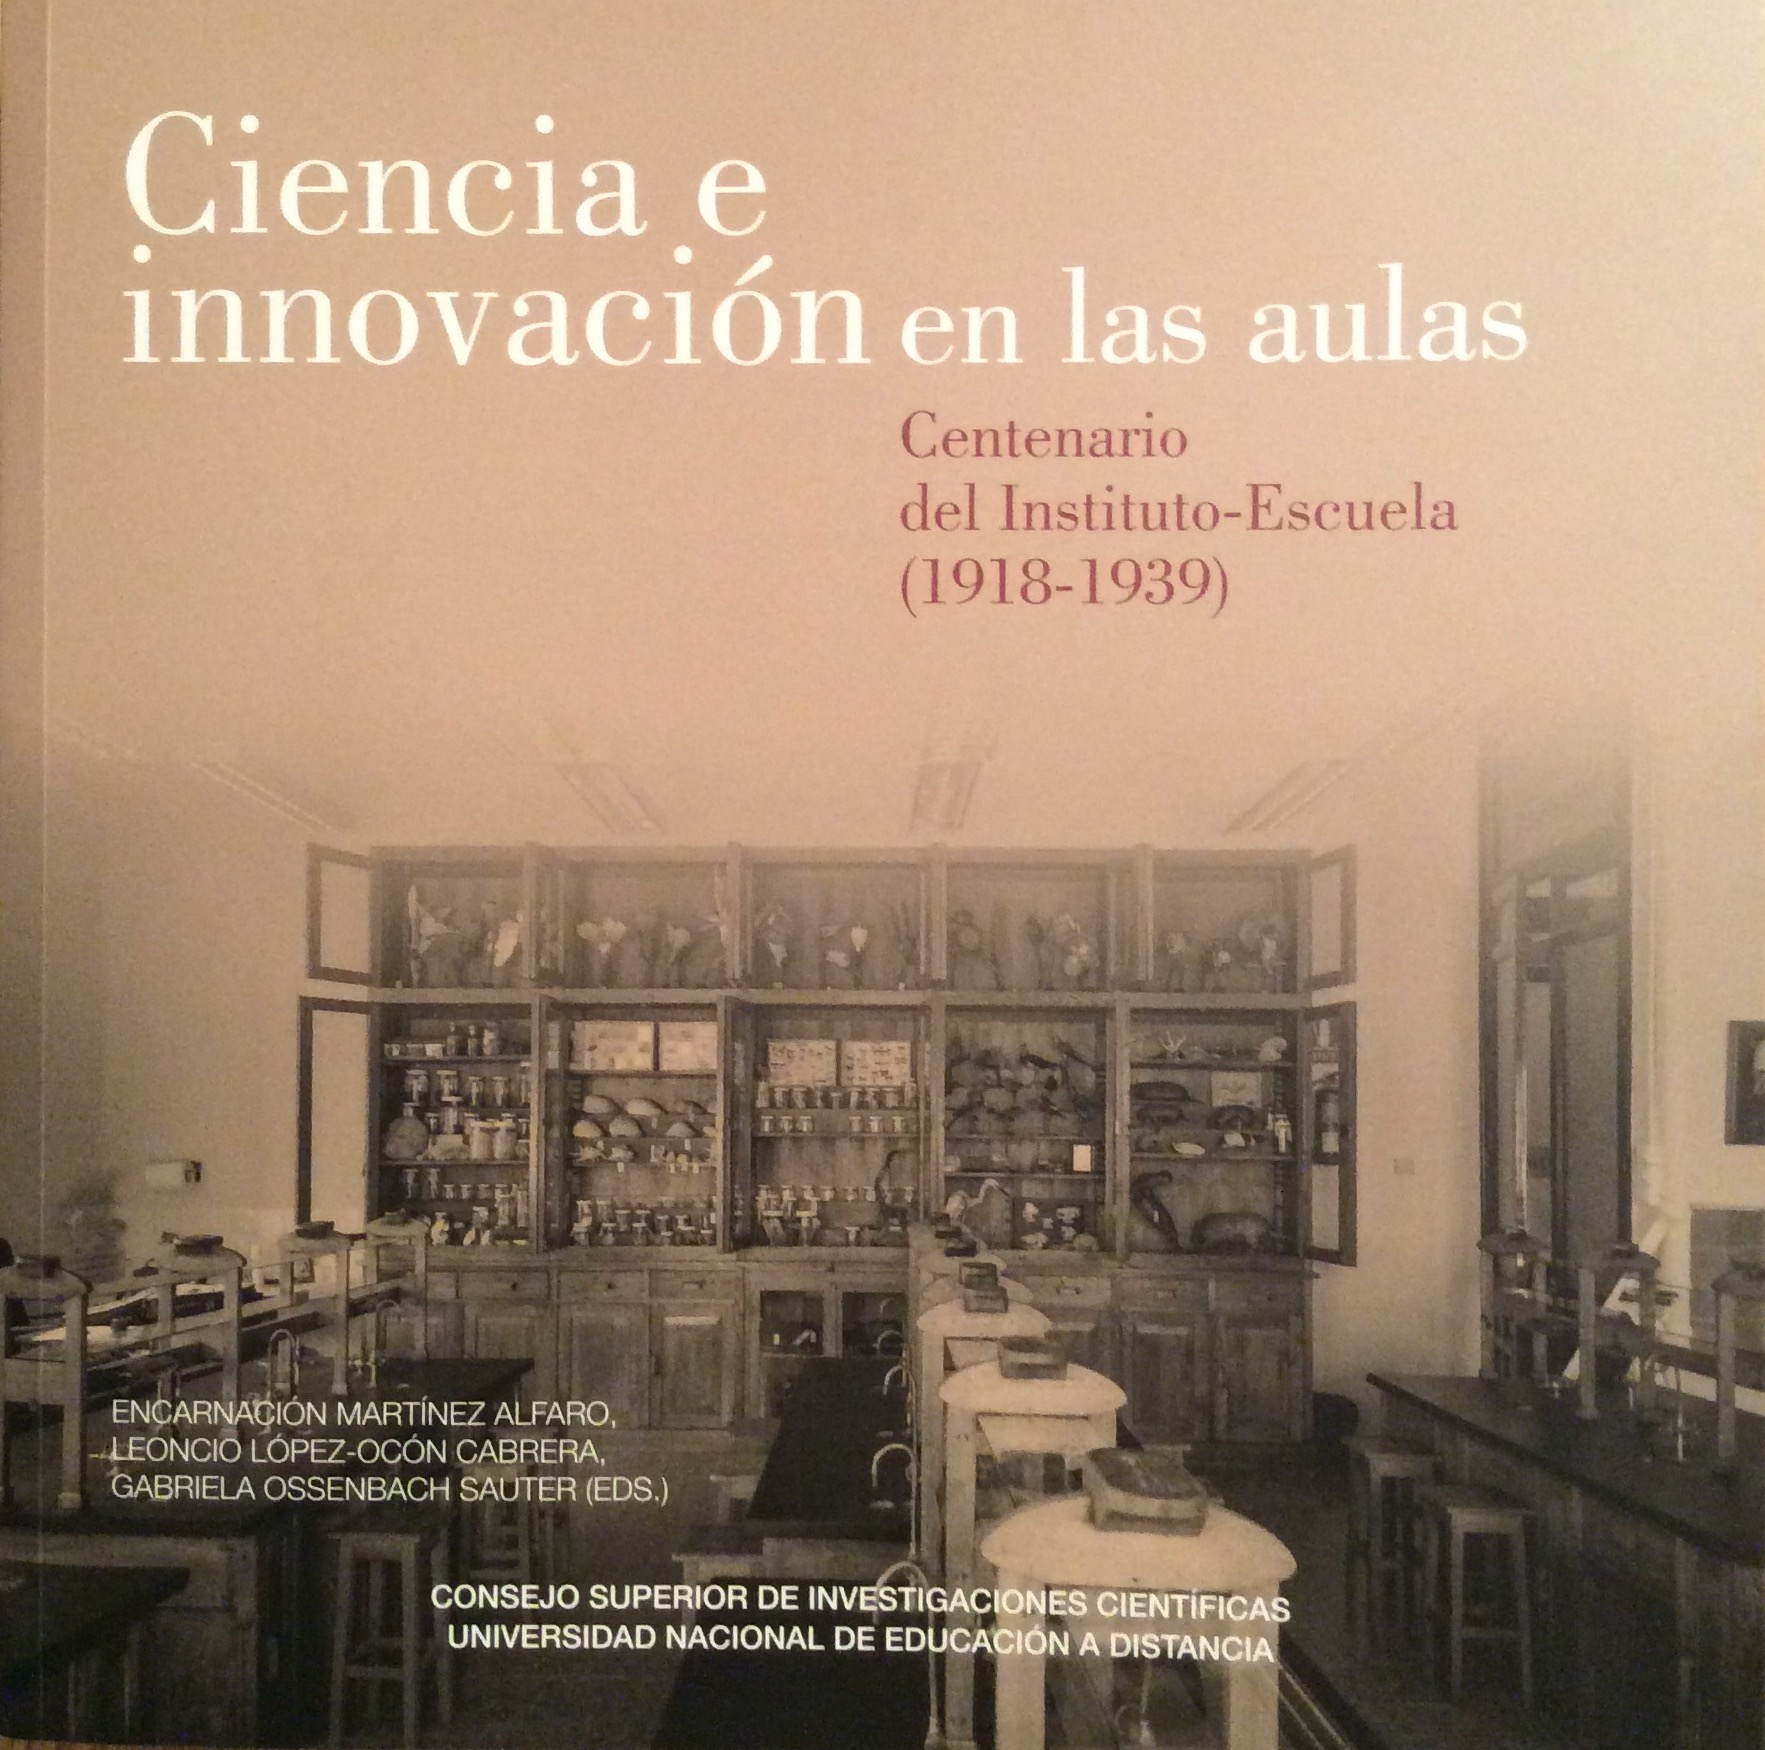 Publicado el libro-catálogo "Ciencia e innovación en las aulas. Centenario del Instituto-Escuela (1918-1939)"